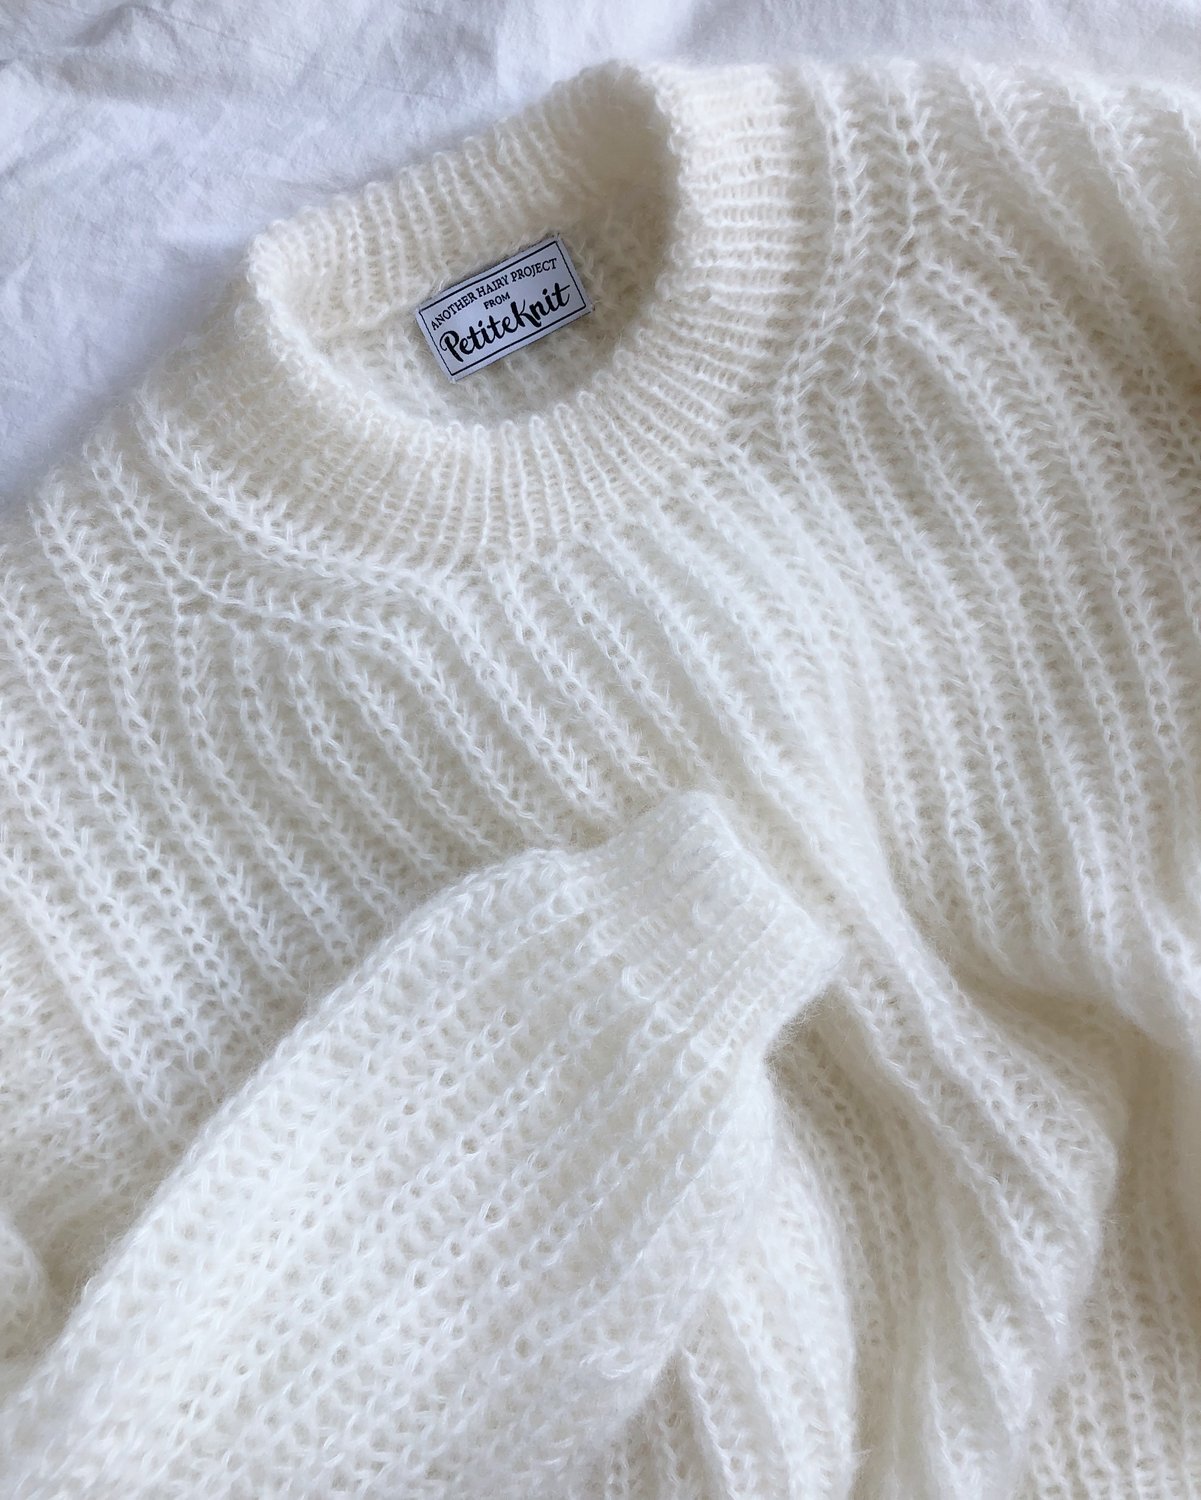 Strikkeopskrift til September Sweater fra PetiteKnit